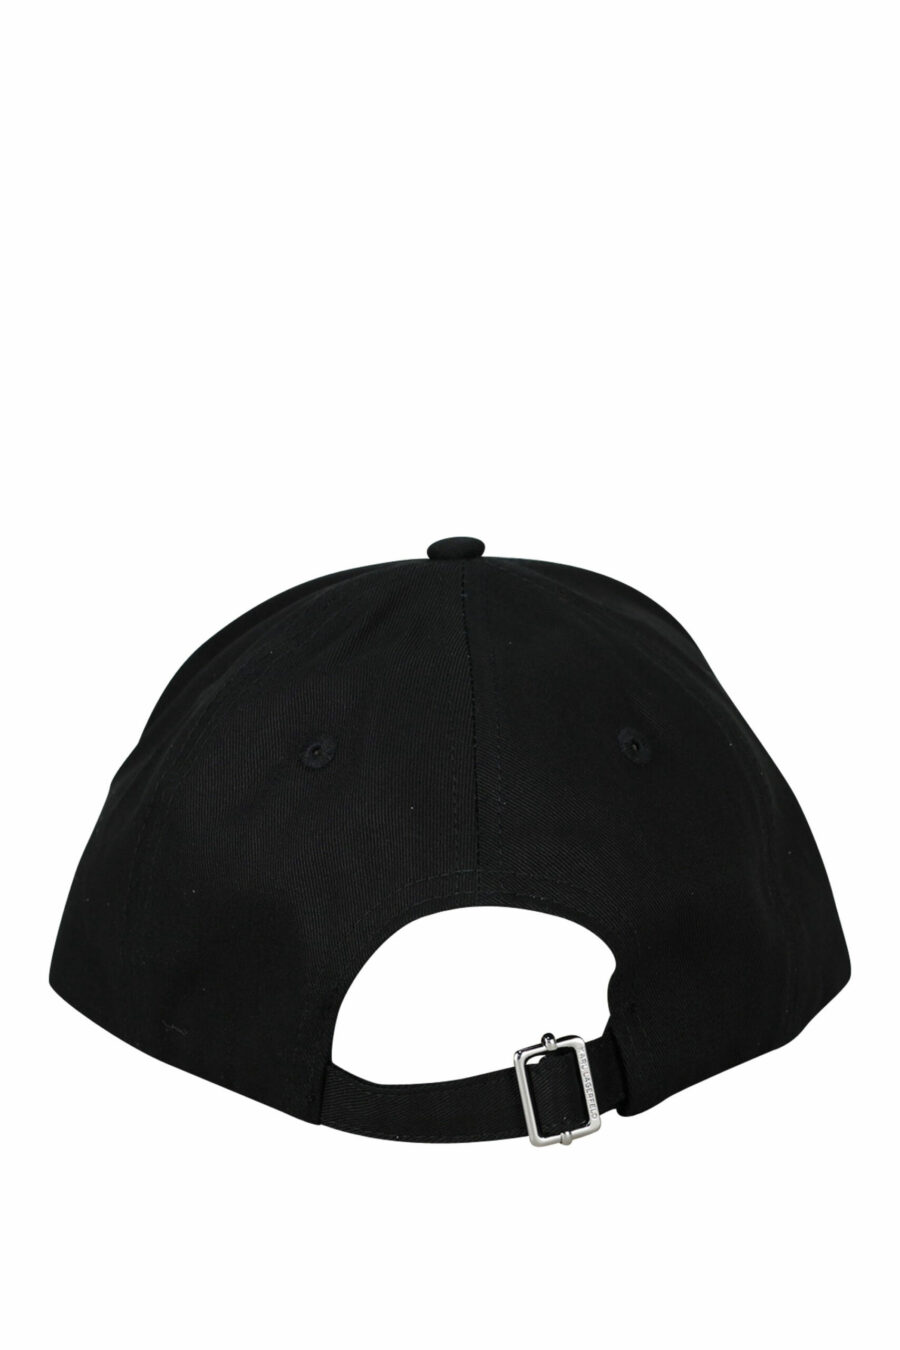 Black cap with signature logo - 8720744418085 1 scaled